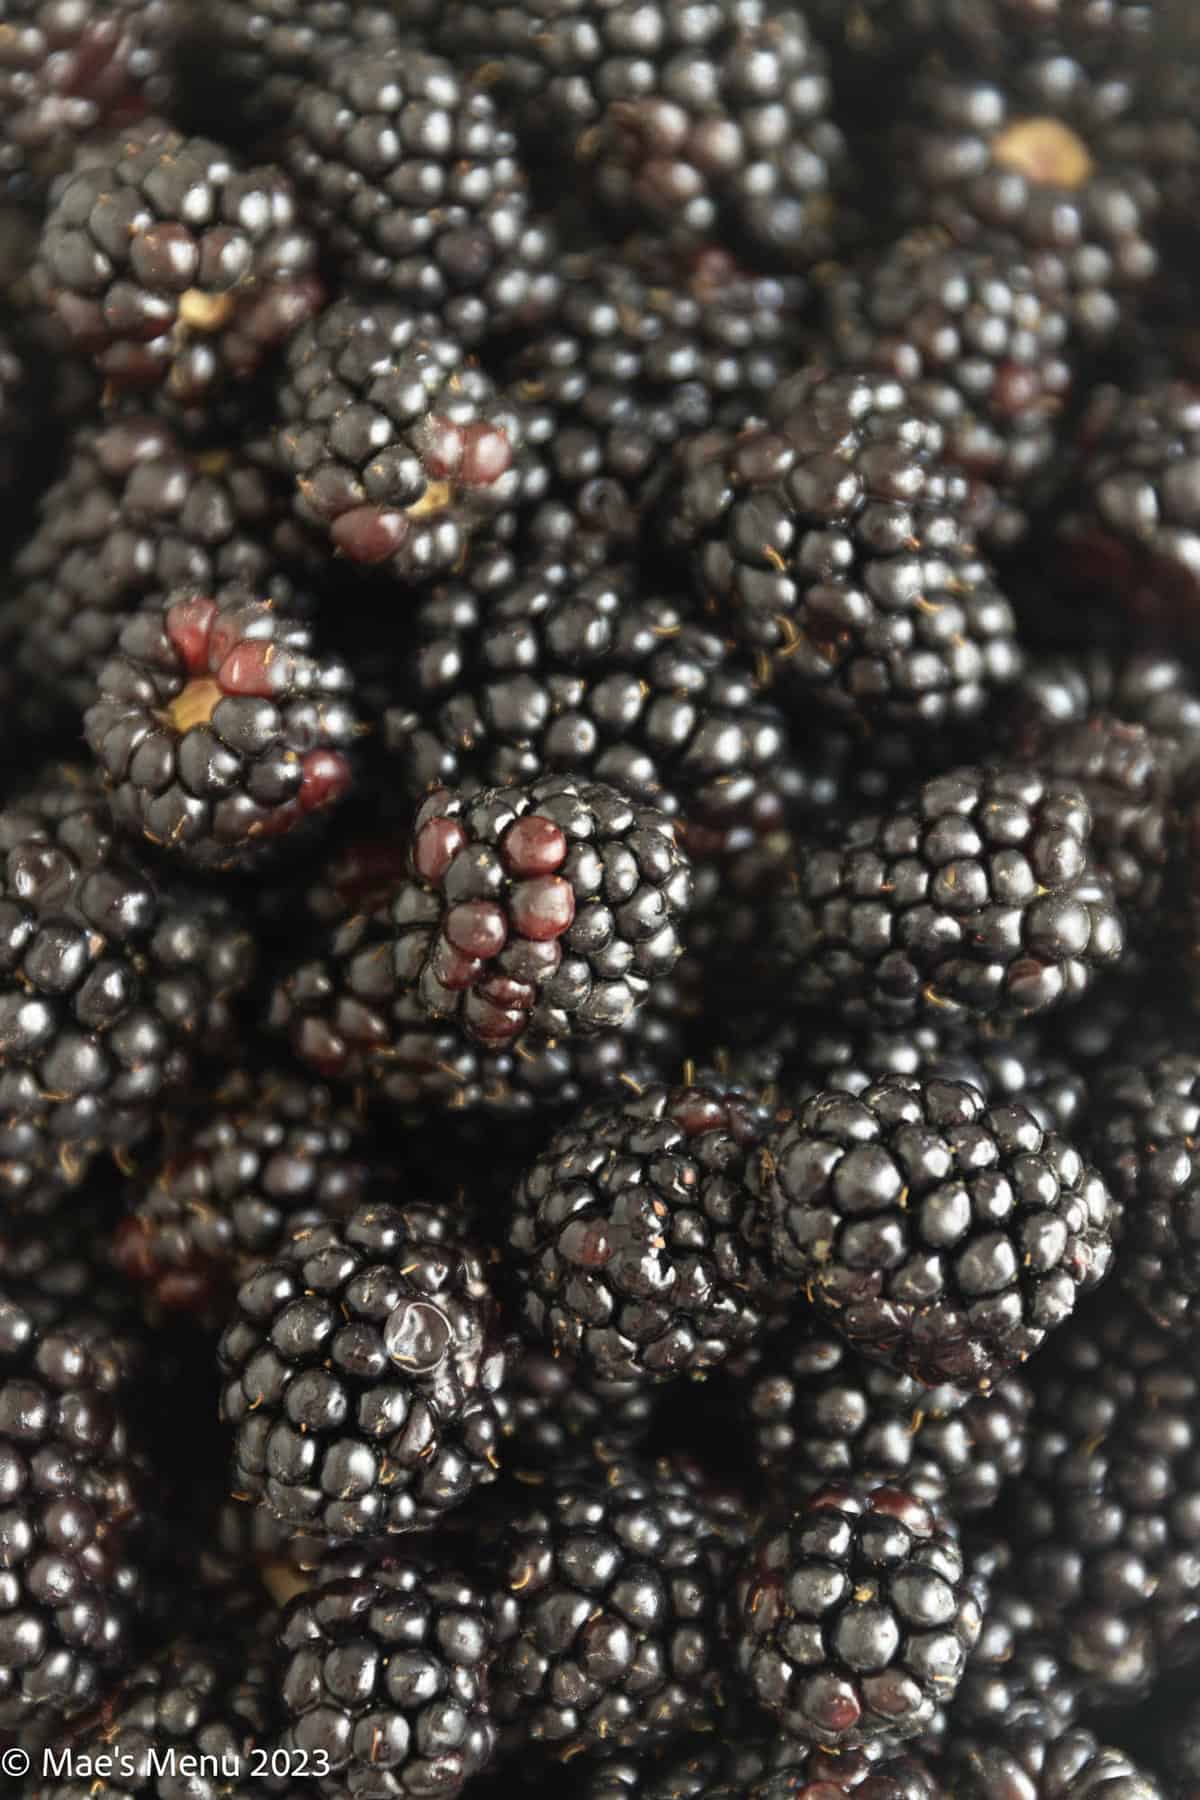 An up-close shot of blackberries.